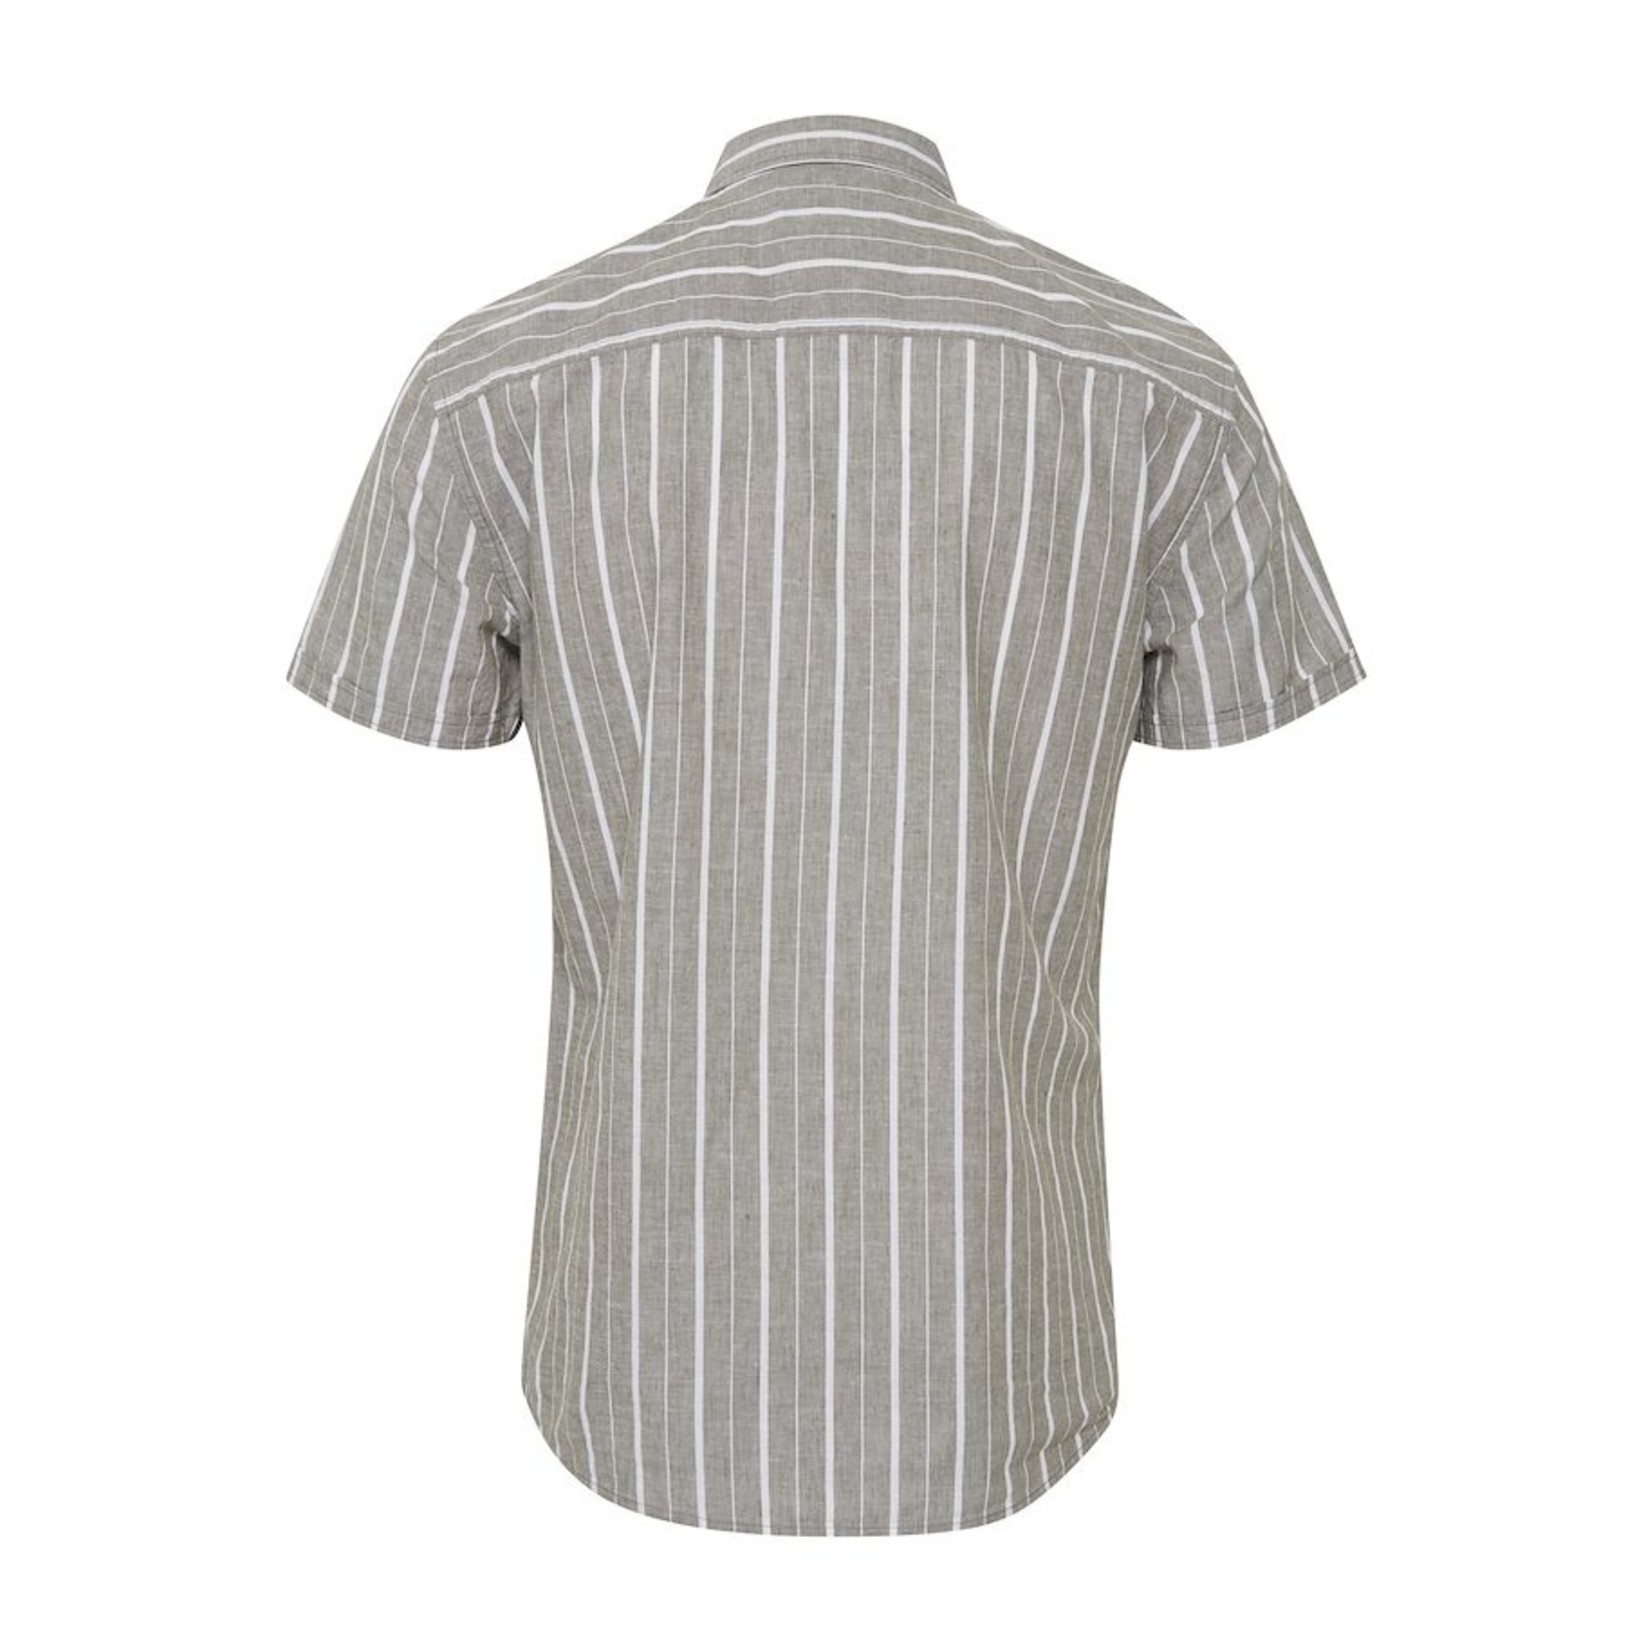 Blend Blend 20712173 Cotton/ Linen Short-Sleeve Shirt